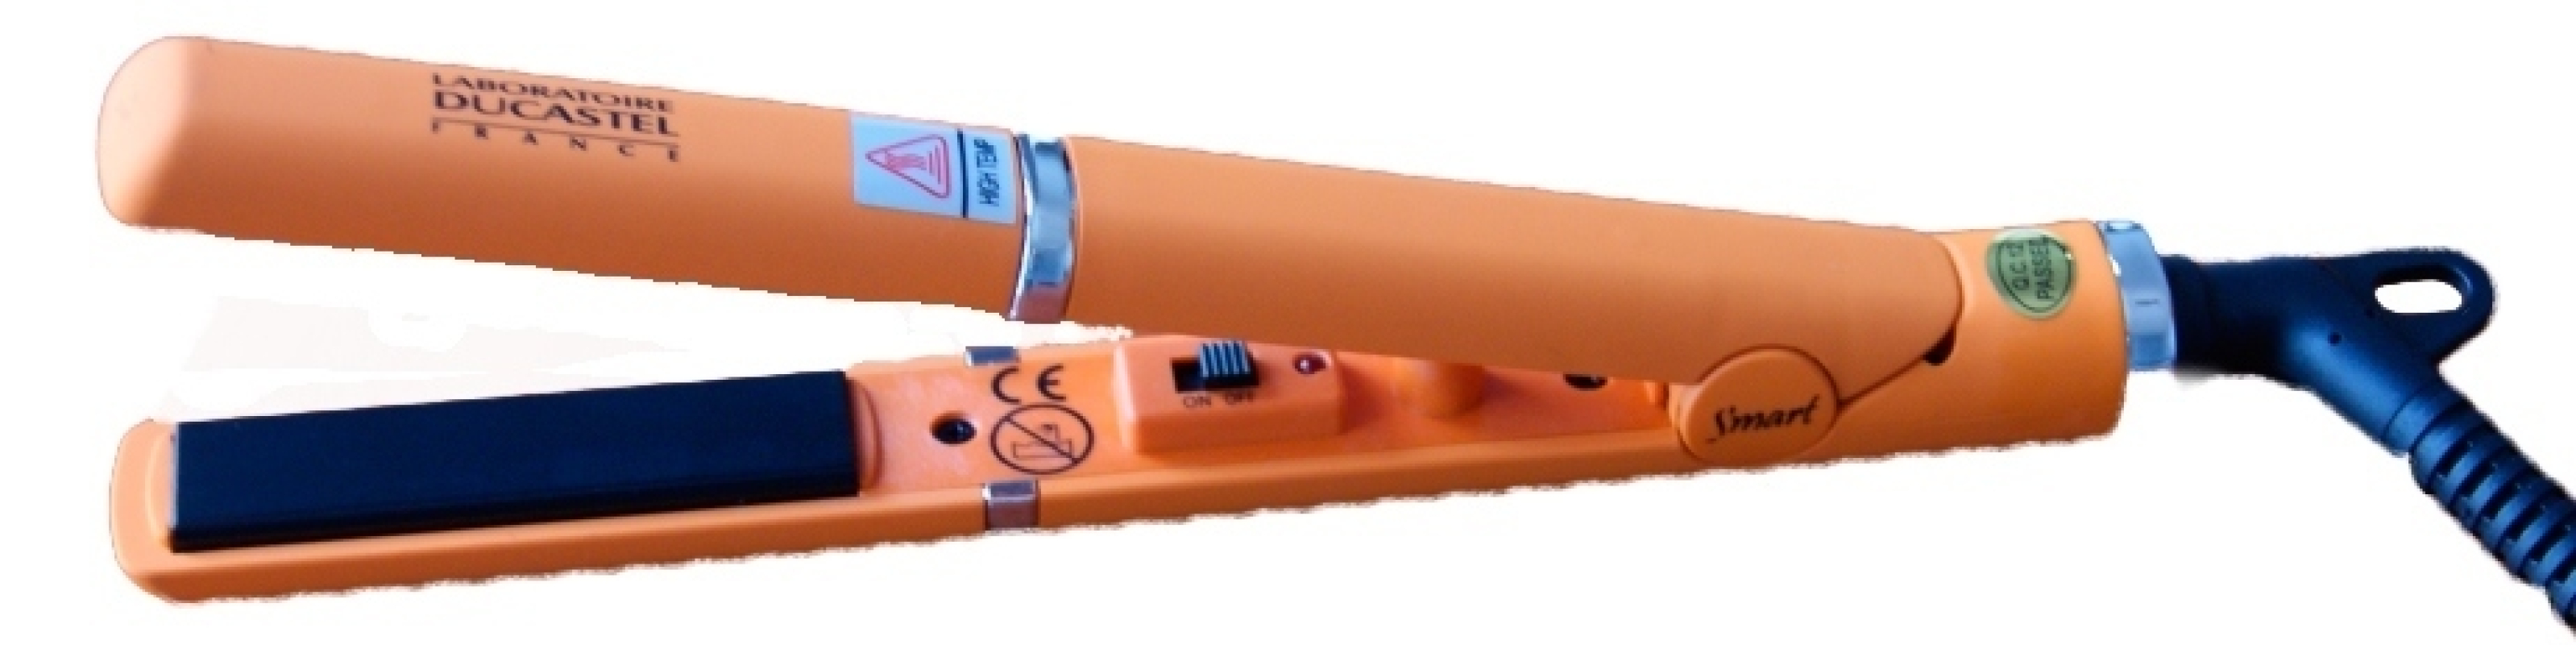 Утюжок Мини Laboratoire Ducastel с турмалиновым покрытием и системой двойного микрочипа 15 мм - 13702